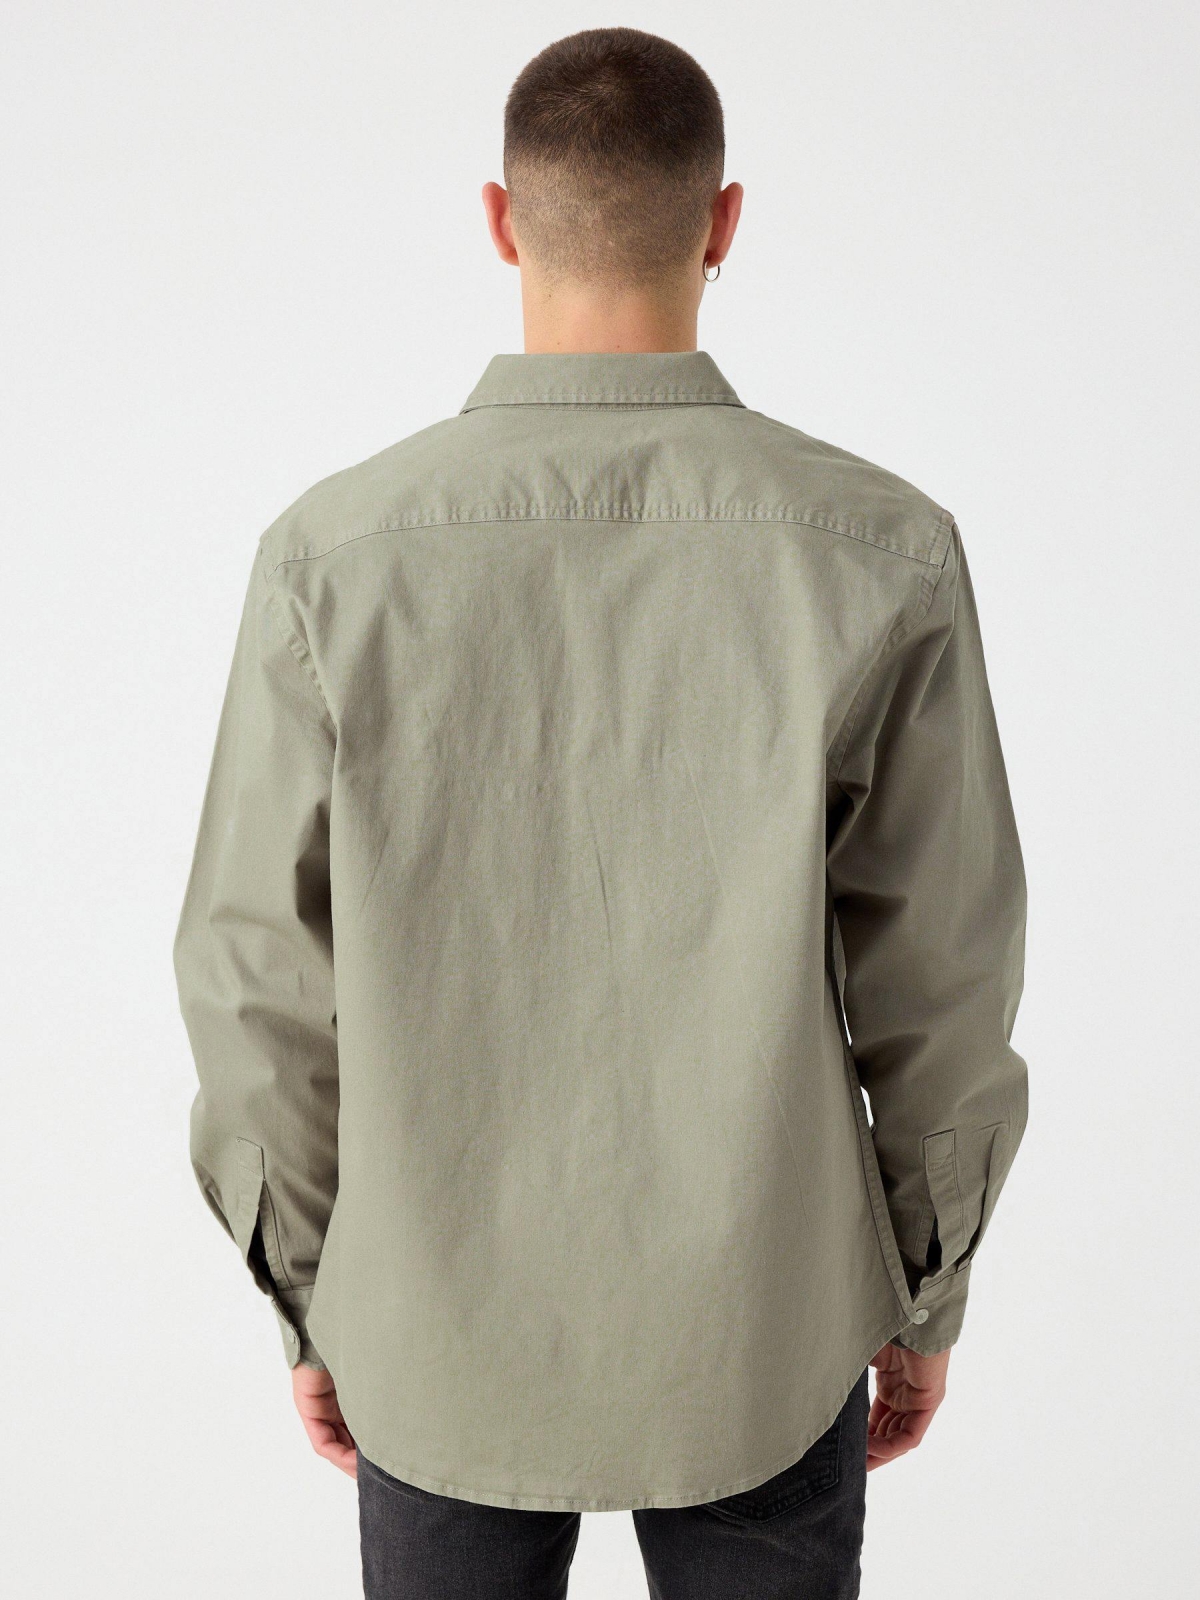 Regular shirt light green middle back view